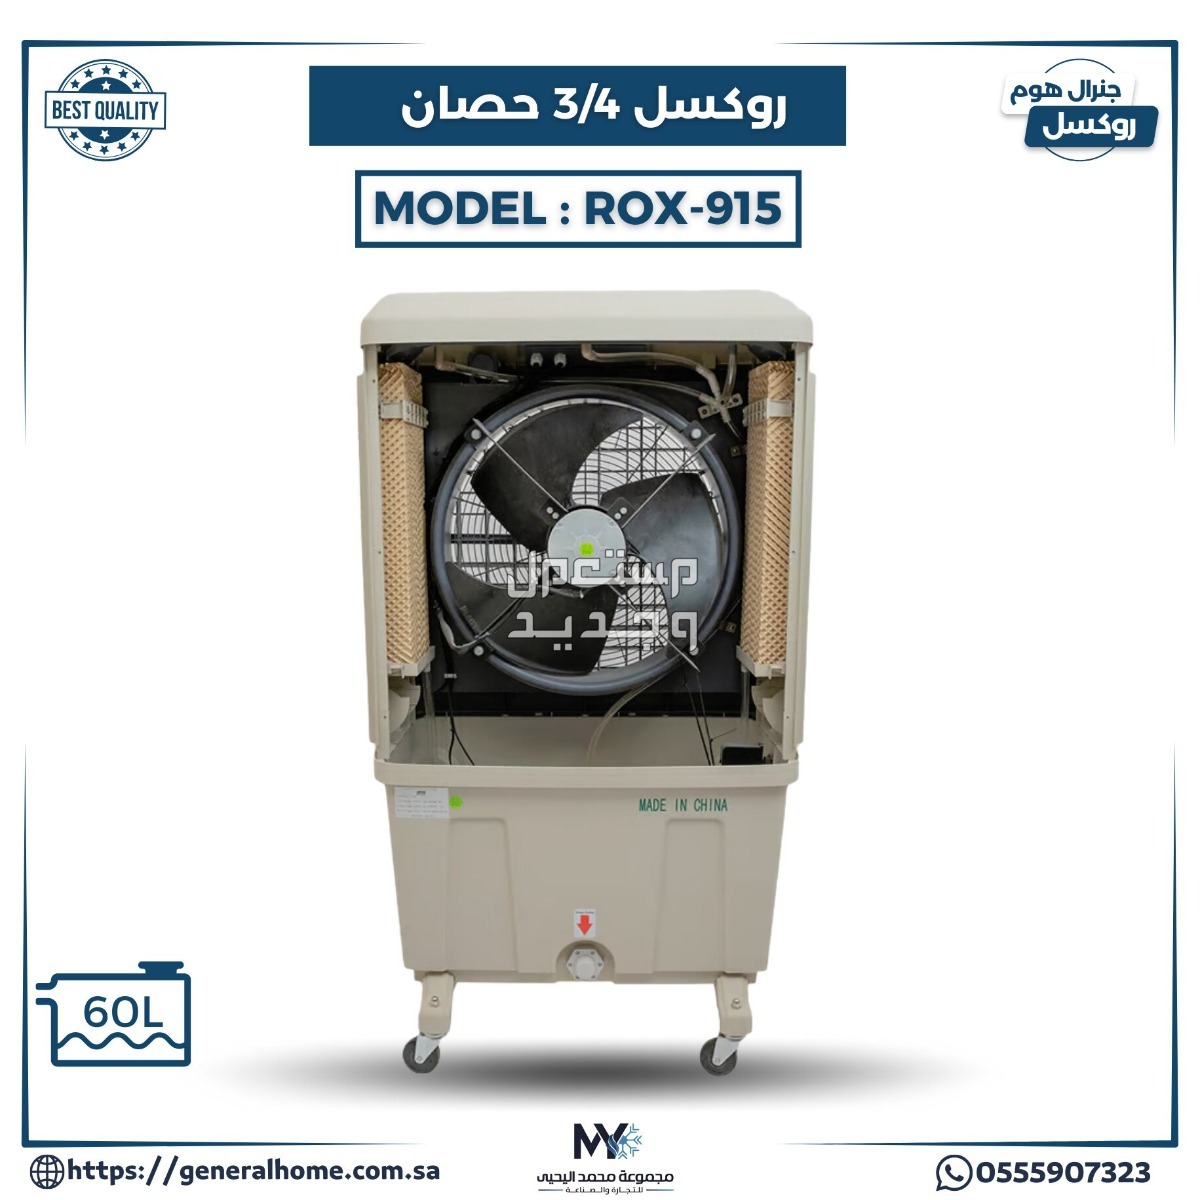 عروض اليحيى للمكيفات بالأنواع والمواصفات والصور والأسعار في فلسطين مكيف روكسل 3/4 حصان موديل ROX-915